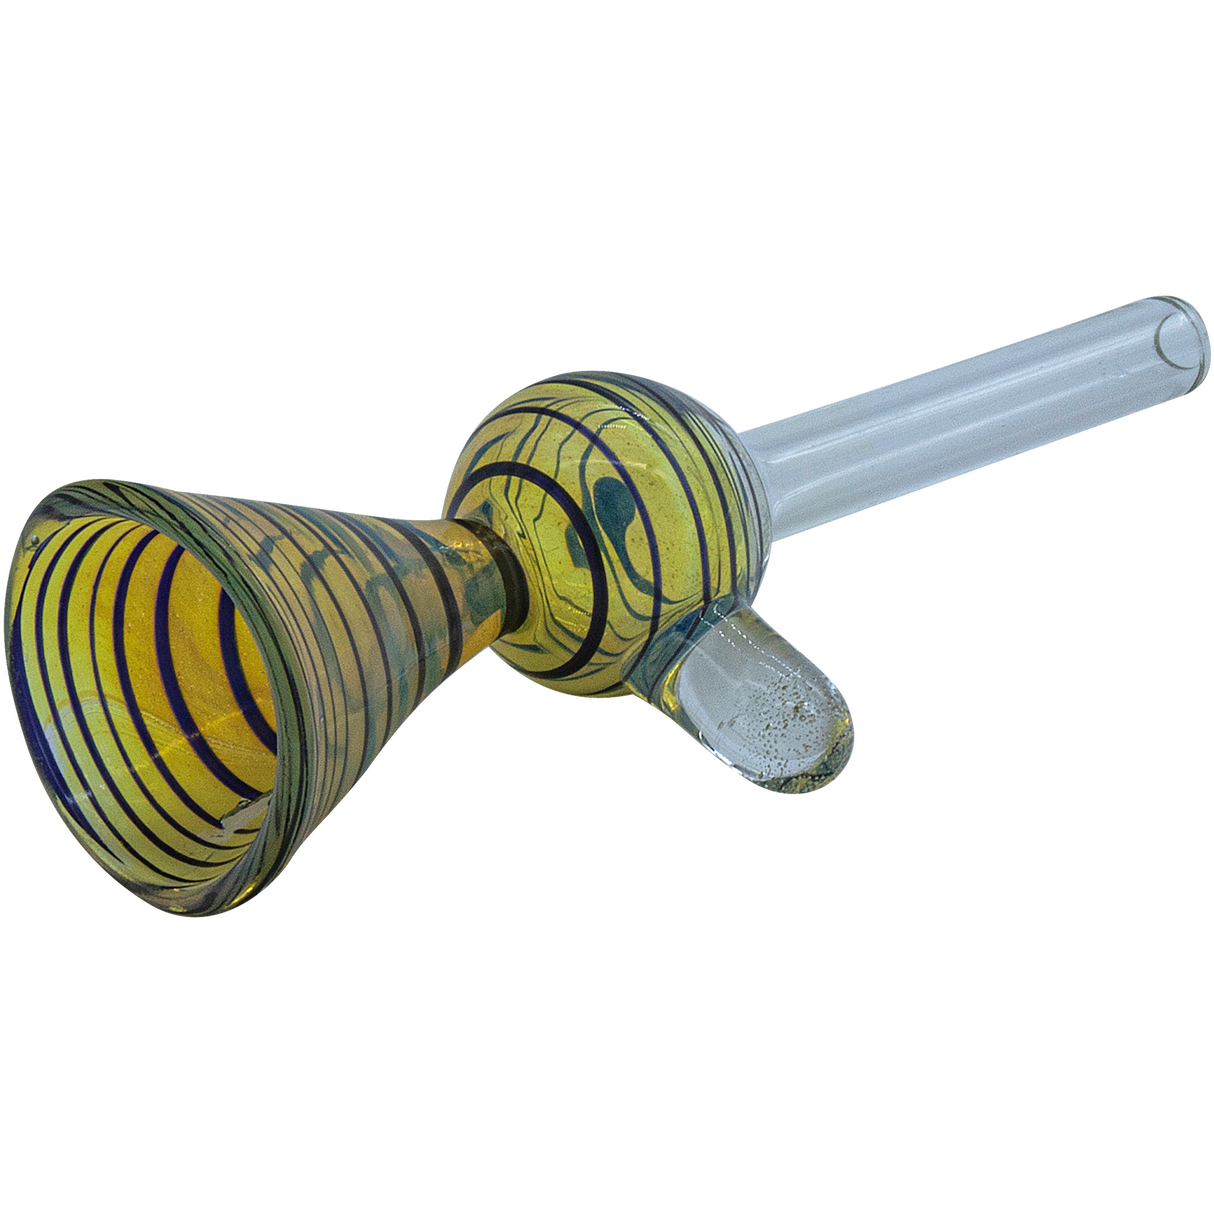 LA Pipes "Loud Speaker" Pull-Stem Slide Bowl for Bongs, Borosilicate Glass, Side View